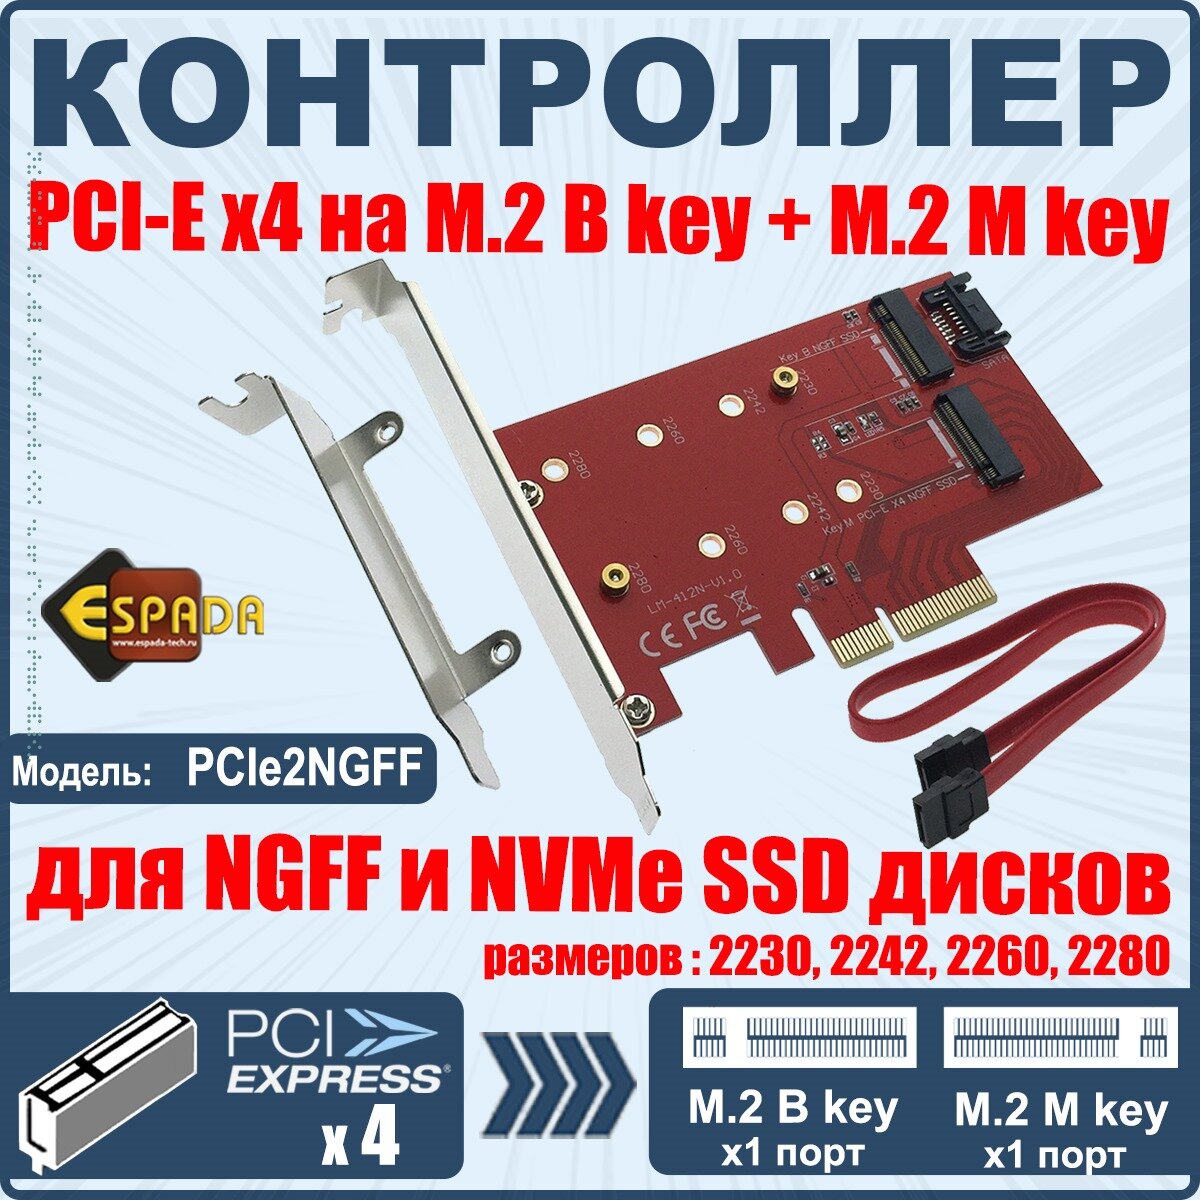 Контроллер PCI-Ex4, M.2 1 порт B key+1 порт M key, модель PCIe2NGFF, Espada